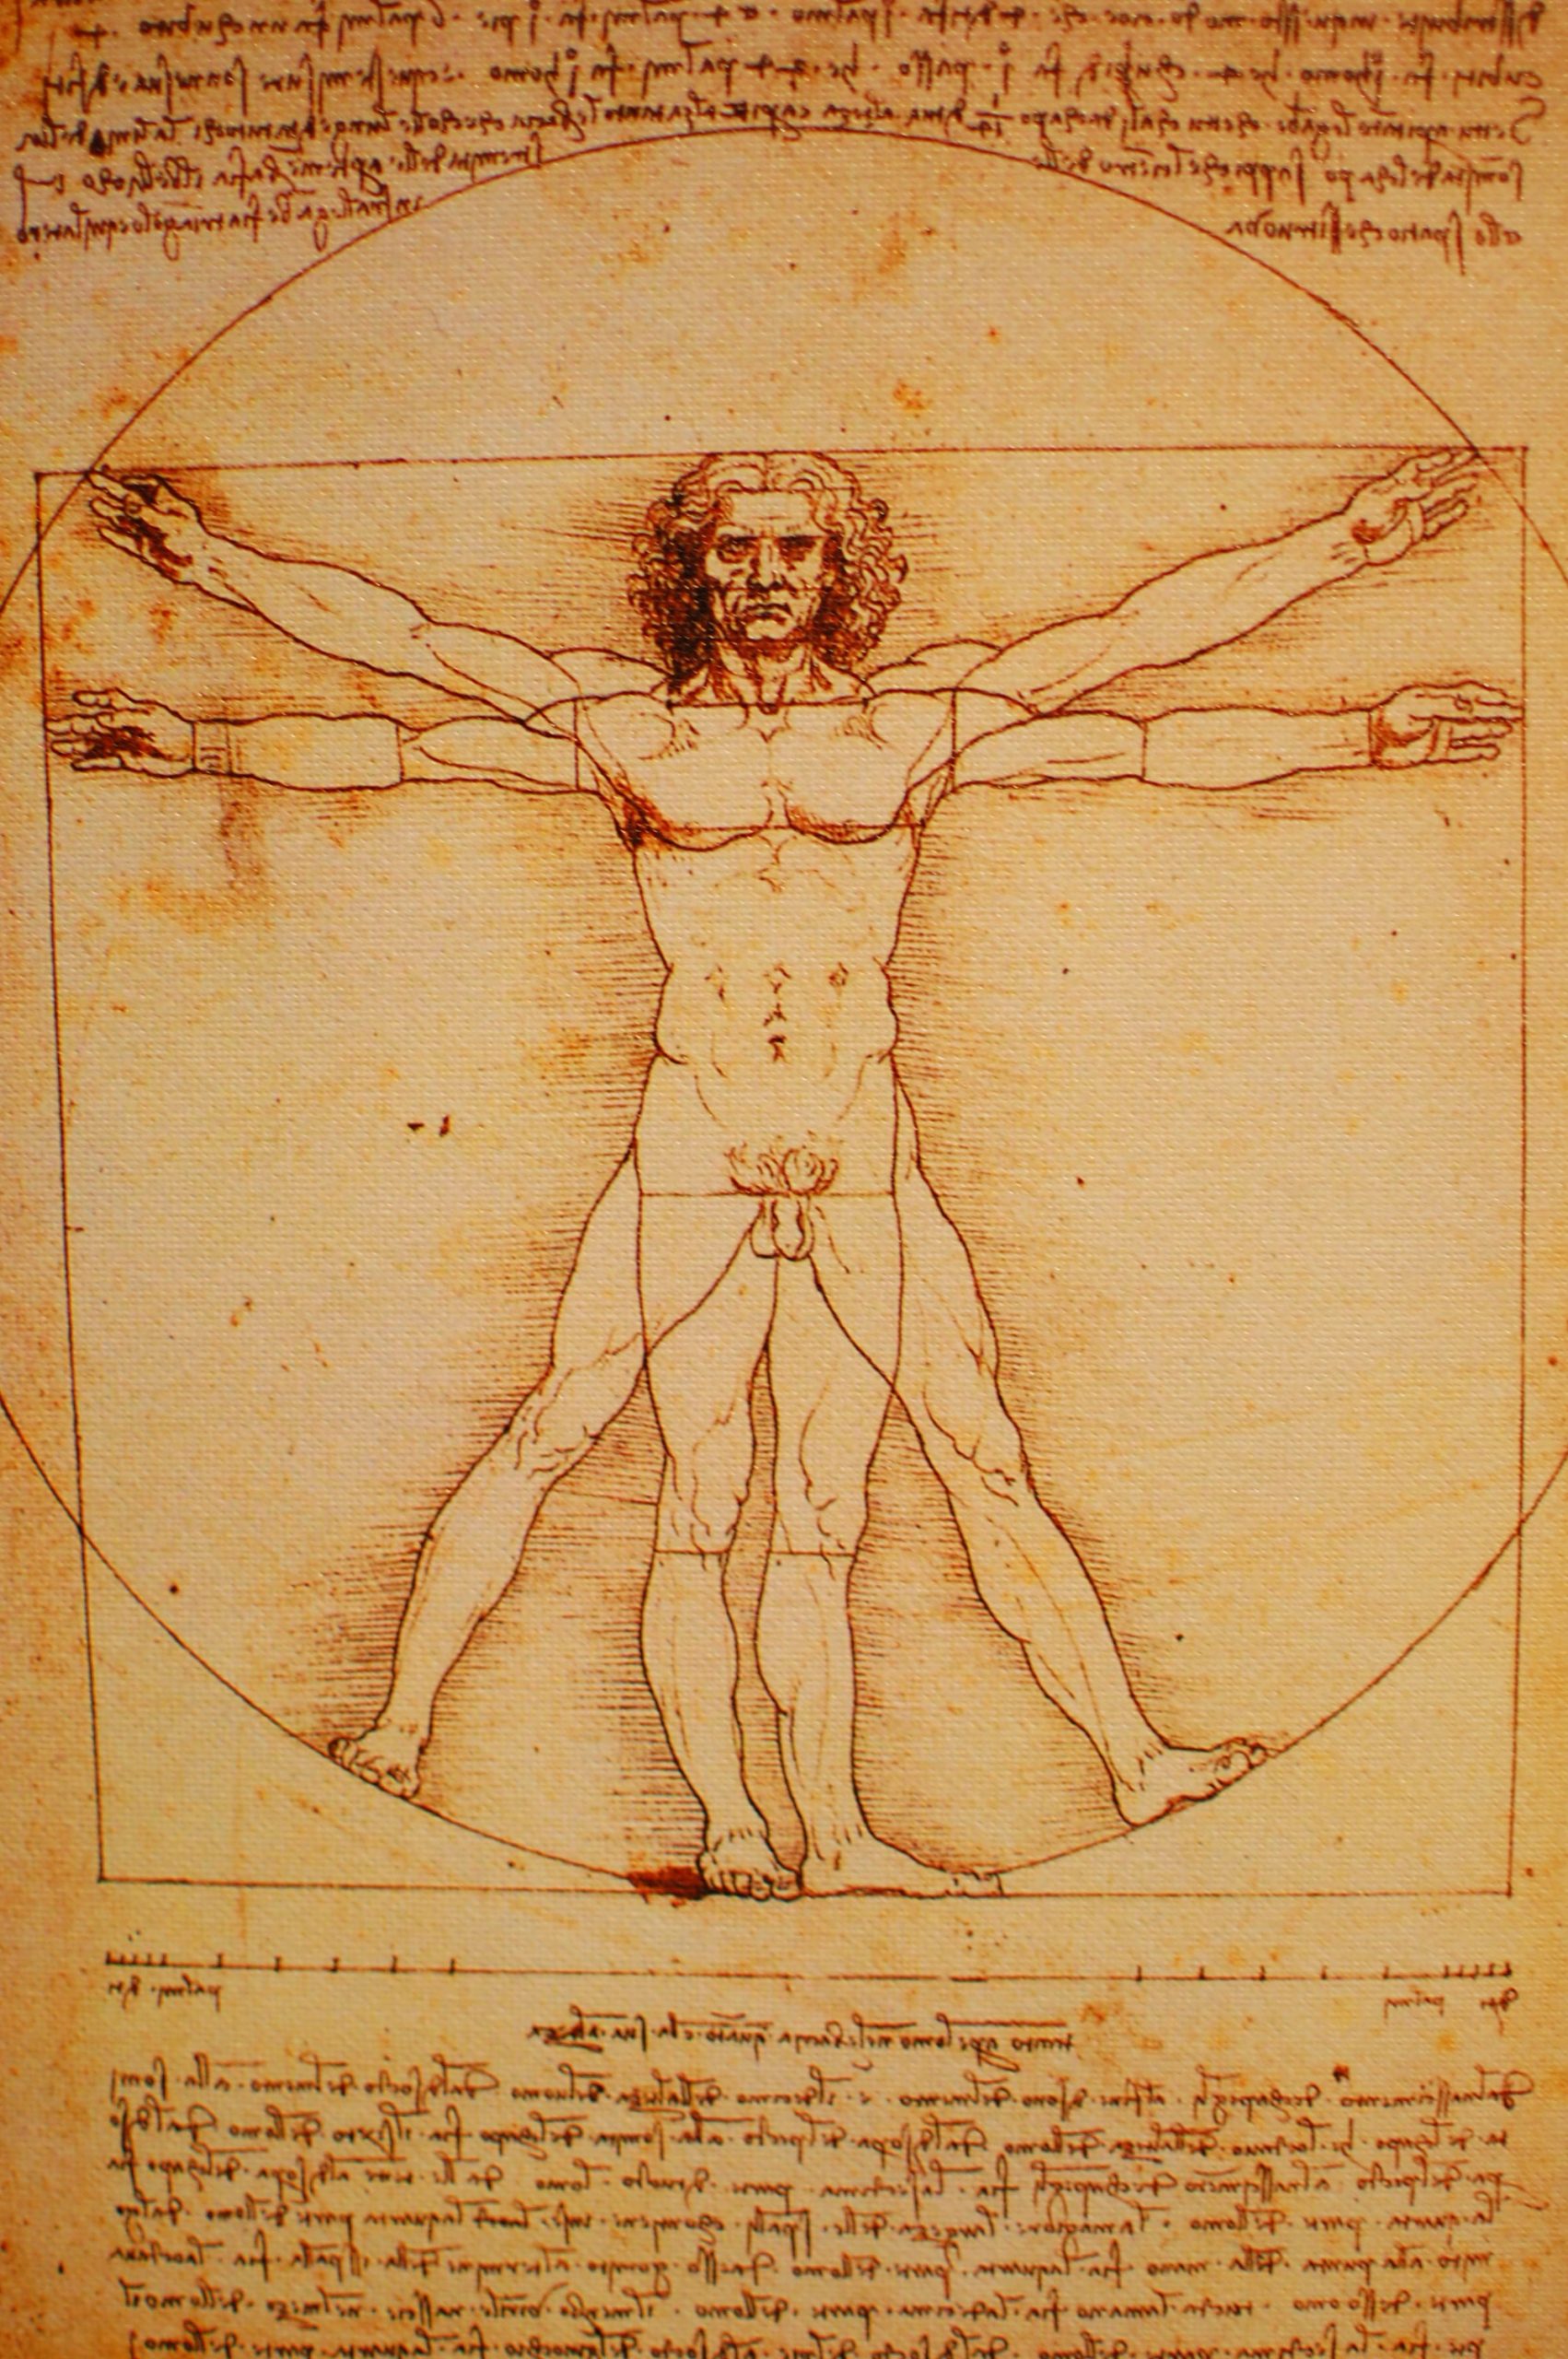 El Hombre de Vitruvio, obra que señala las “proporciones ideales” en el cuerpo humano, de acuerdo con Leonardo Da Vinci. "Vitruvian Man" by Doug.Williams is licensed under CC BY 2.0.